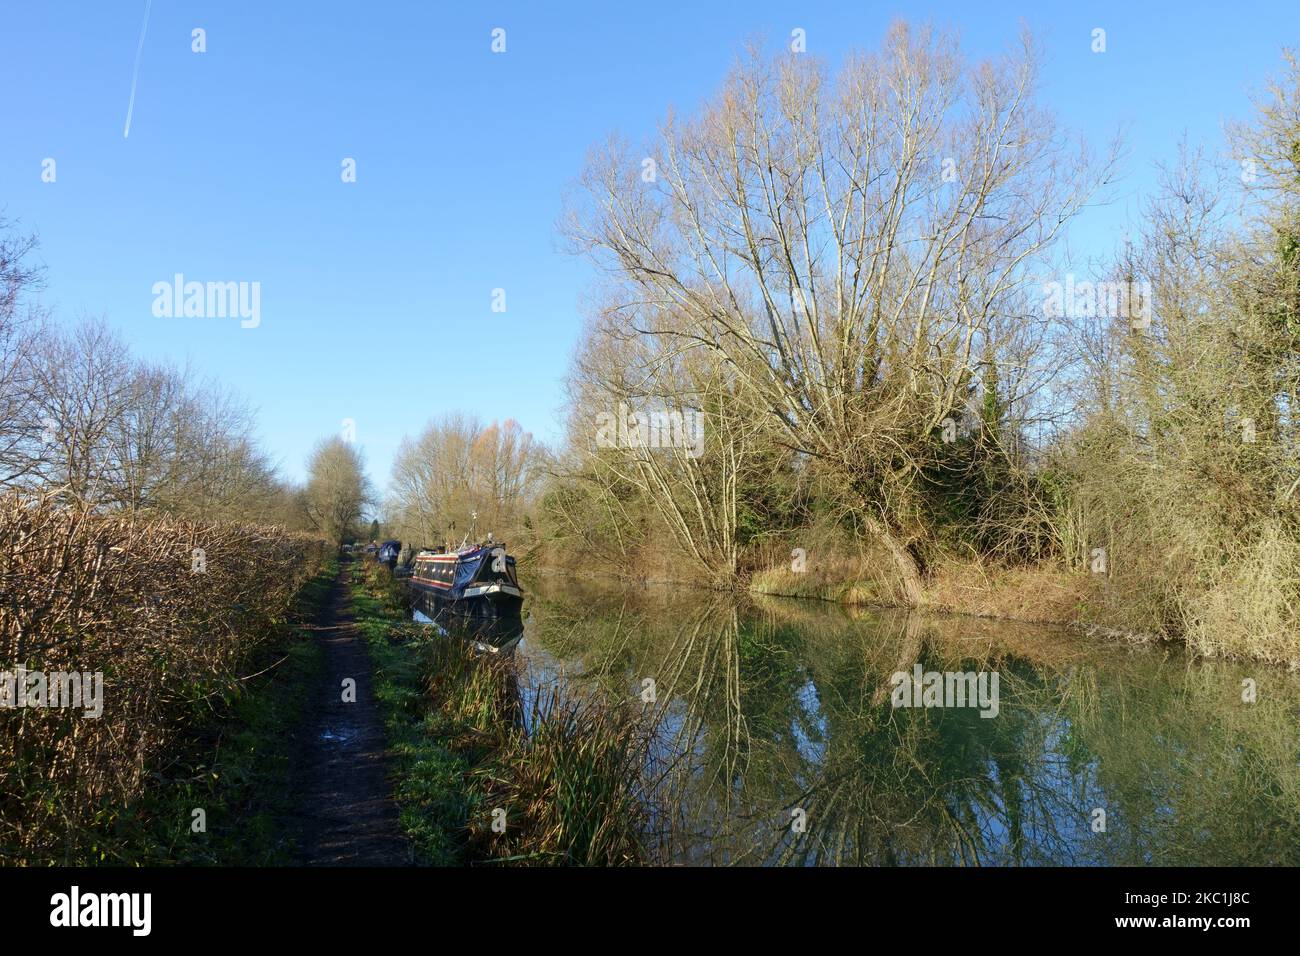 Barcos estrechos amarrados en el Canal Kennet & Avon, árboles bordeados de reflejos de espejo en un día de otoño con cielo azul, Hungerford, enero Foto de stock